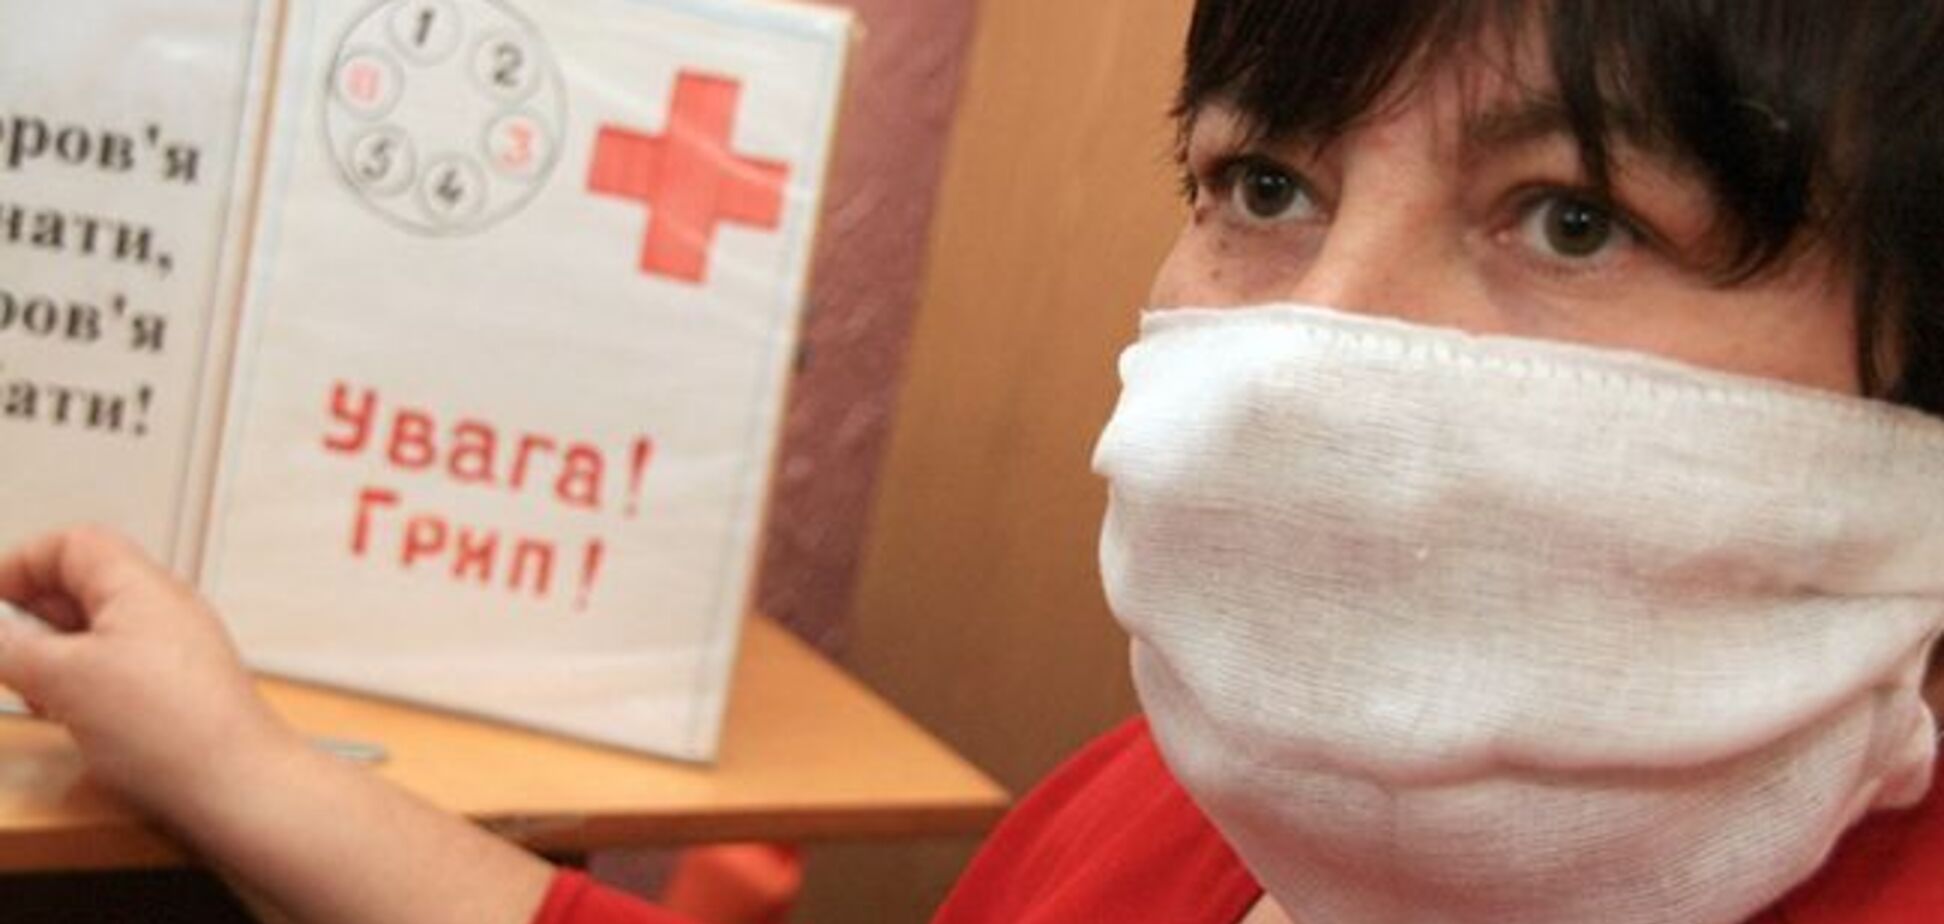 На Днепропетровщине началась эпидемия гриппа: люди массово обращаются в больницы